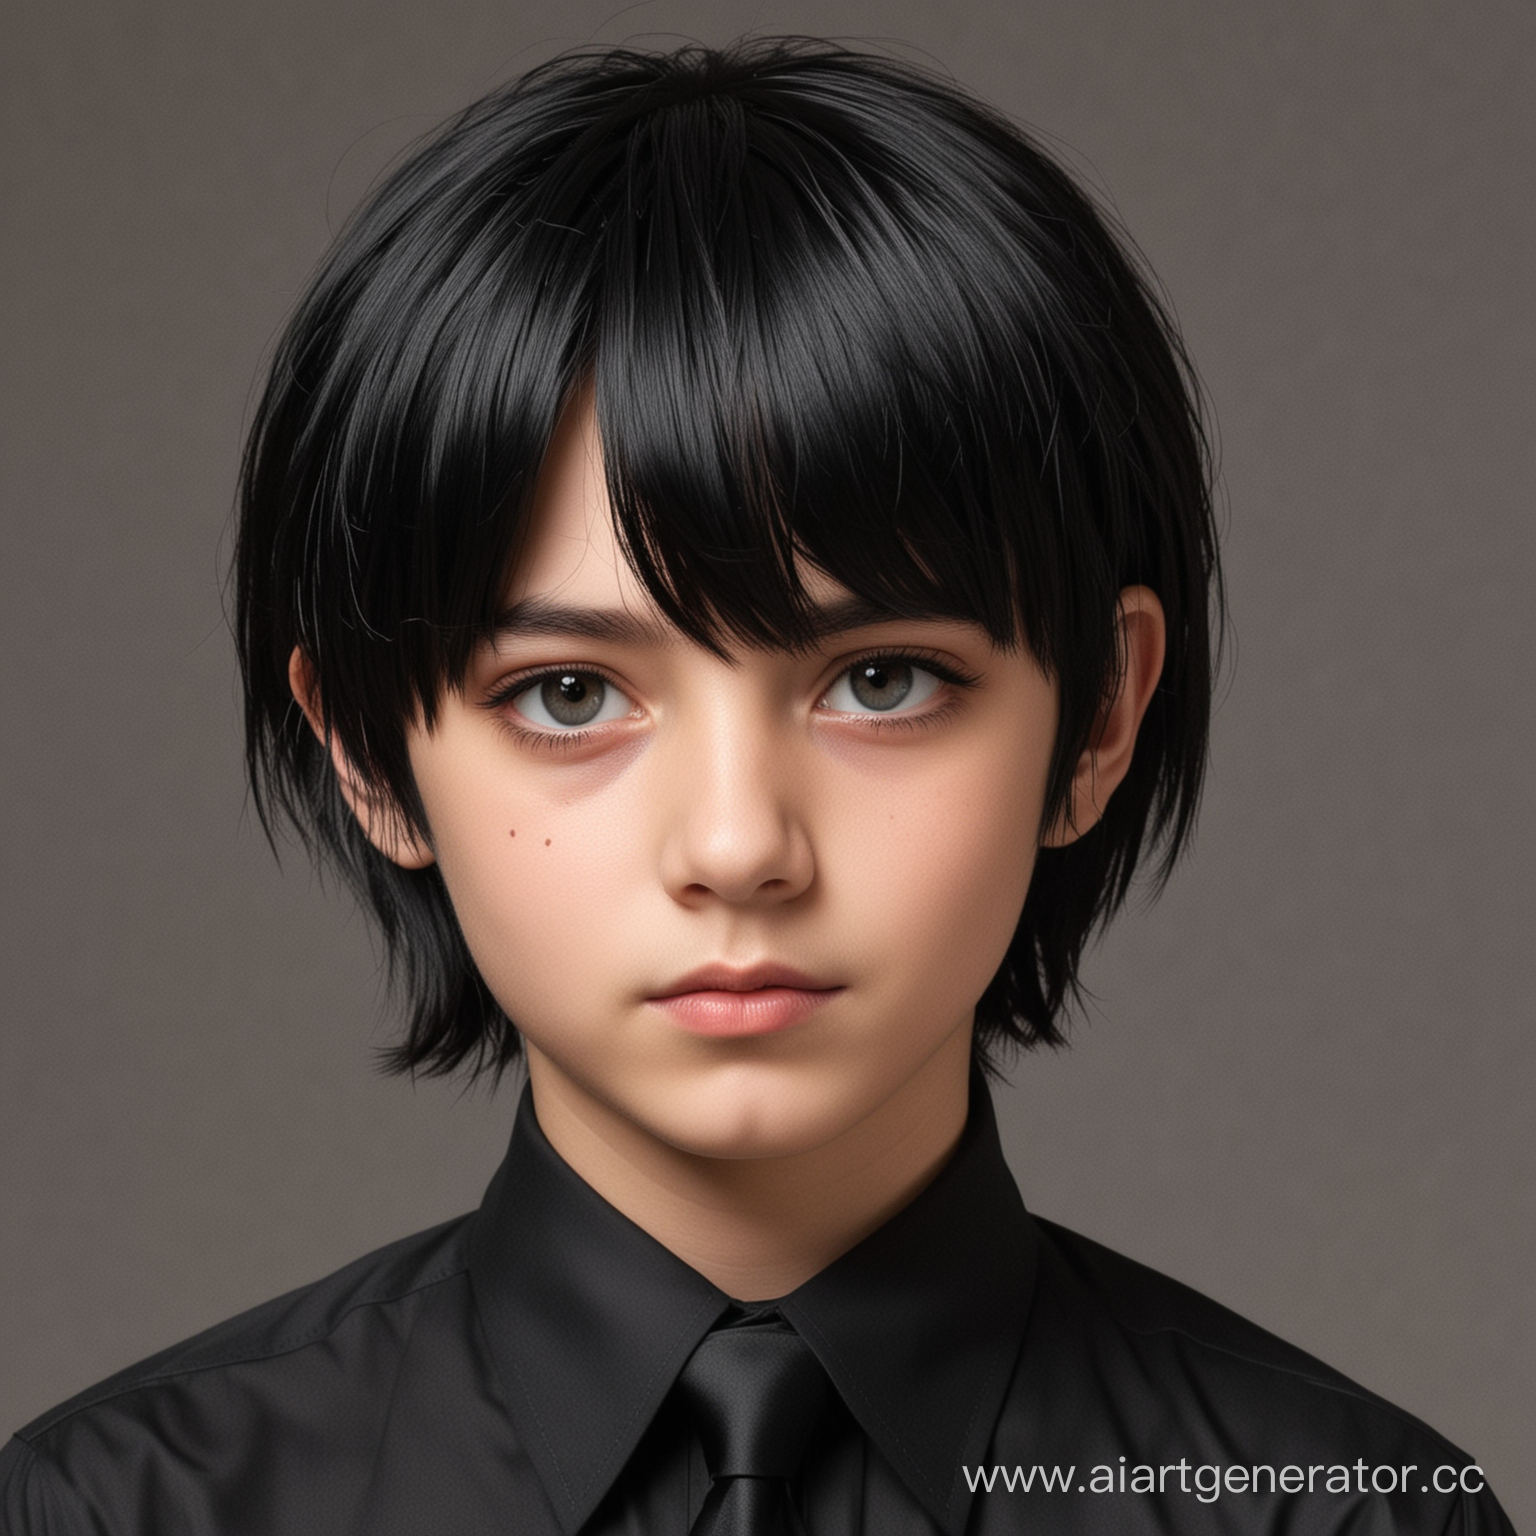 Мальчик с черными волосами профиль в рубашки с черным галстуком и прической каре
более женственный 